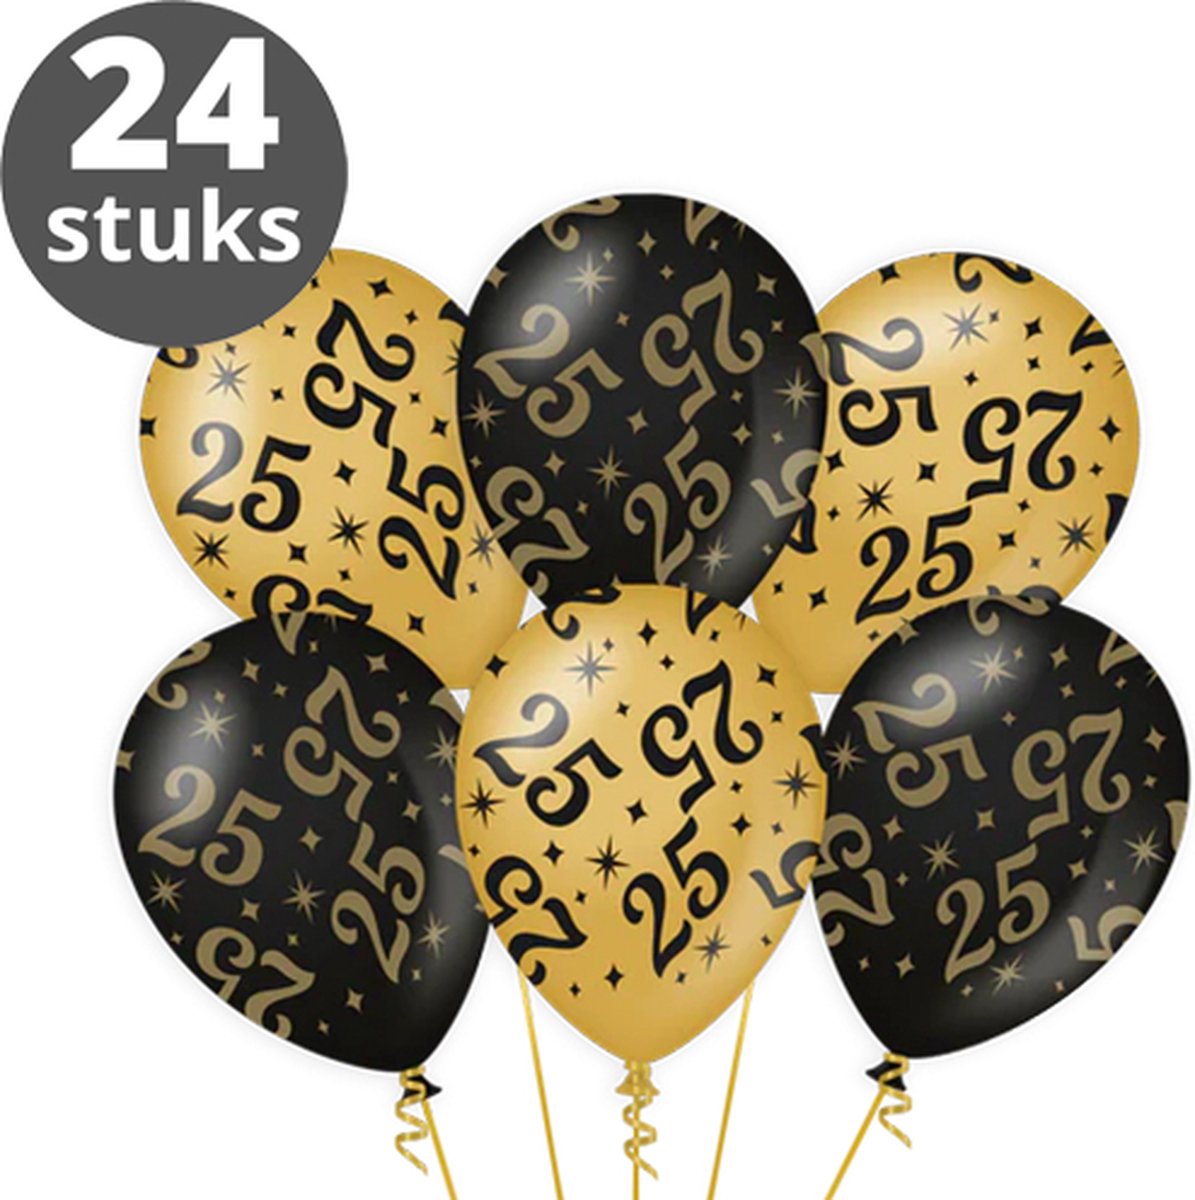 Ballonnen Goud Zwart (24 stuks) - Zwart goud ballonnen pakket - Versiering zwart goud - Metallic ballonnen Black & Gold - Balonnen goud & zwart - Verjaardag versiering 25 Jaar - 24 stuks